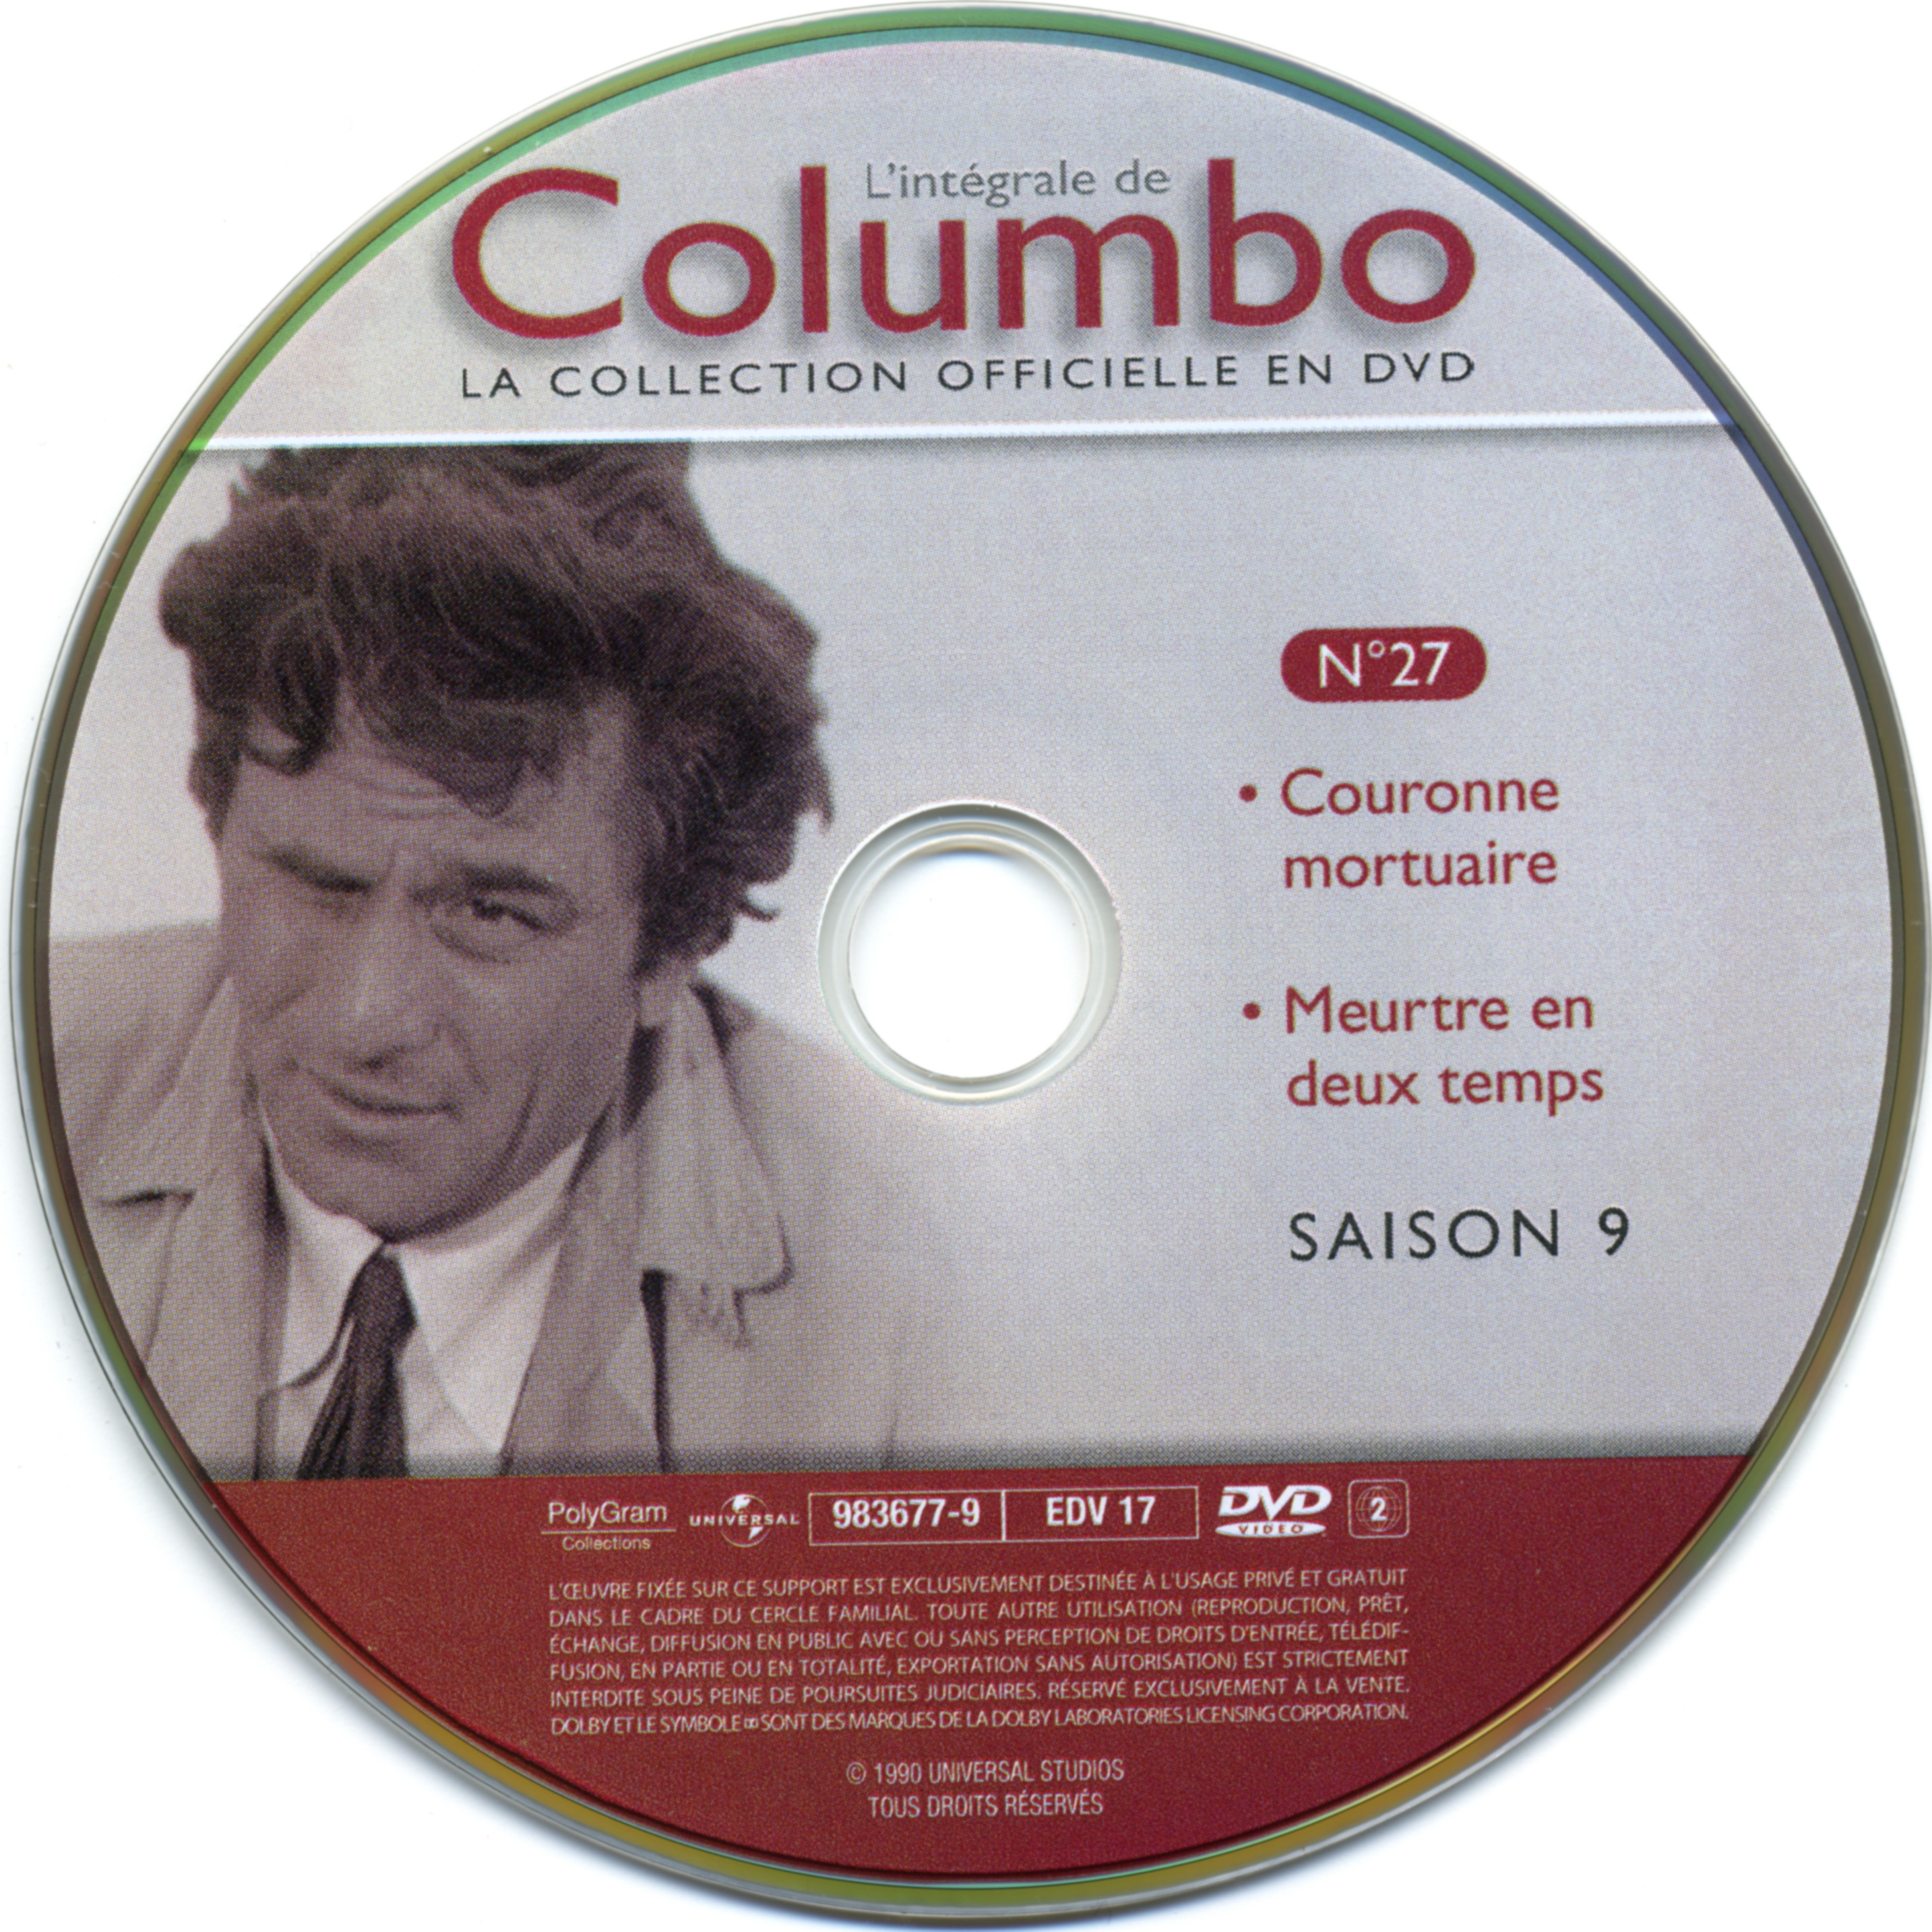 Columbo saison 9 vol 27